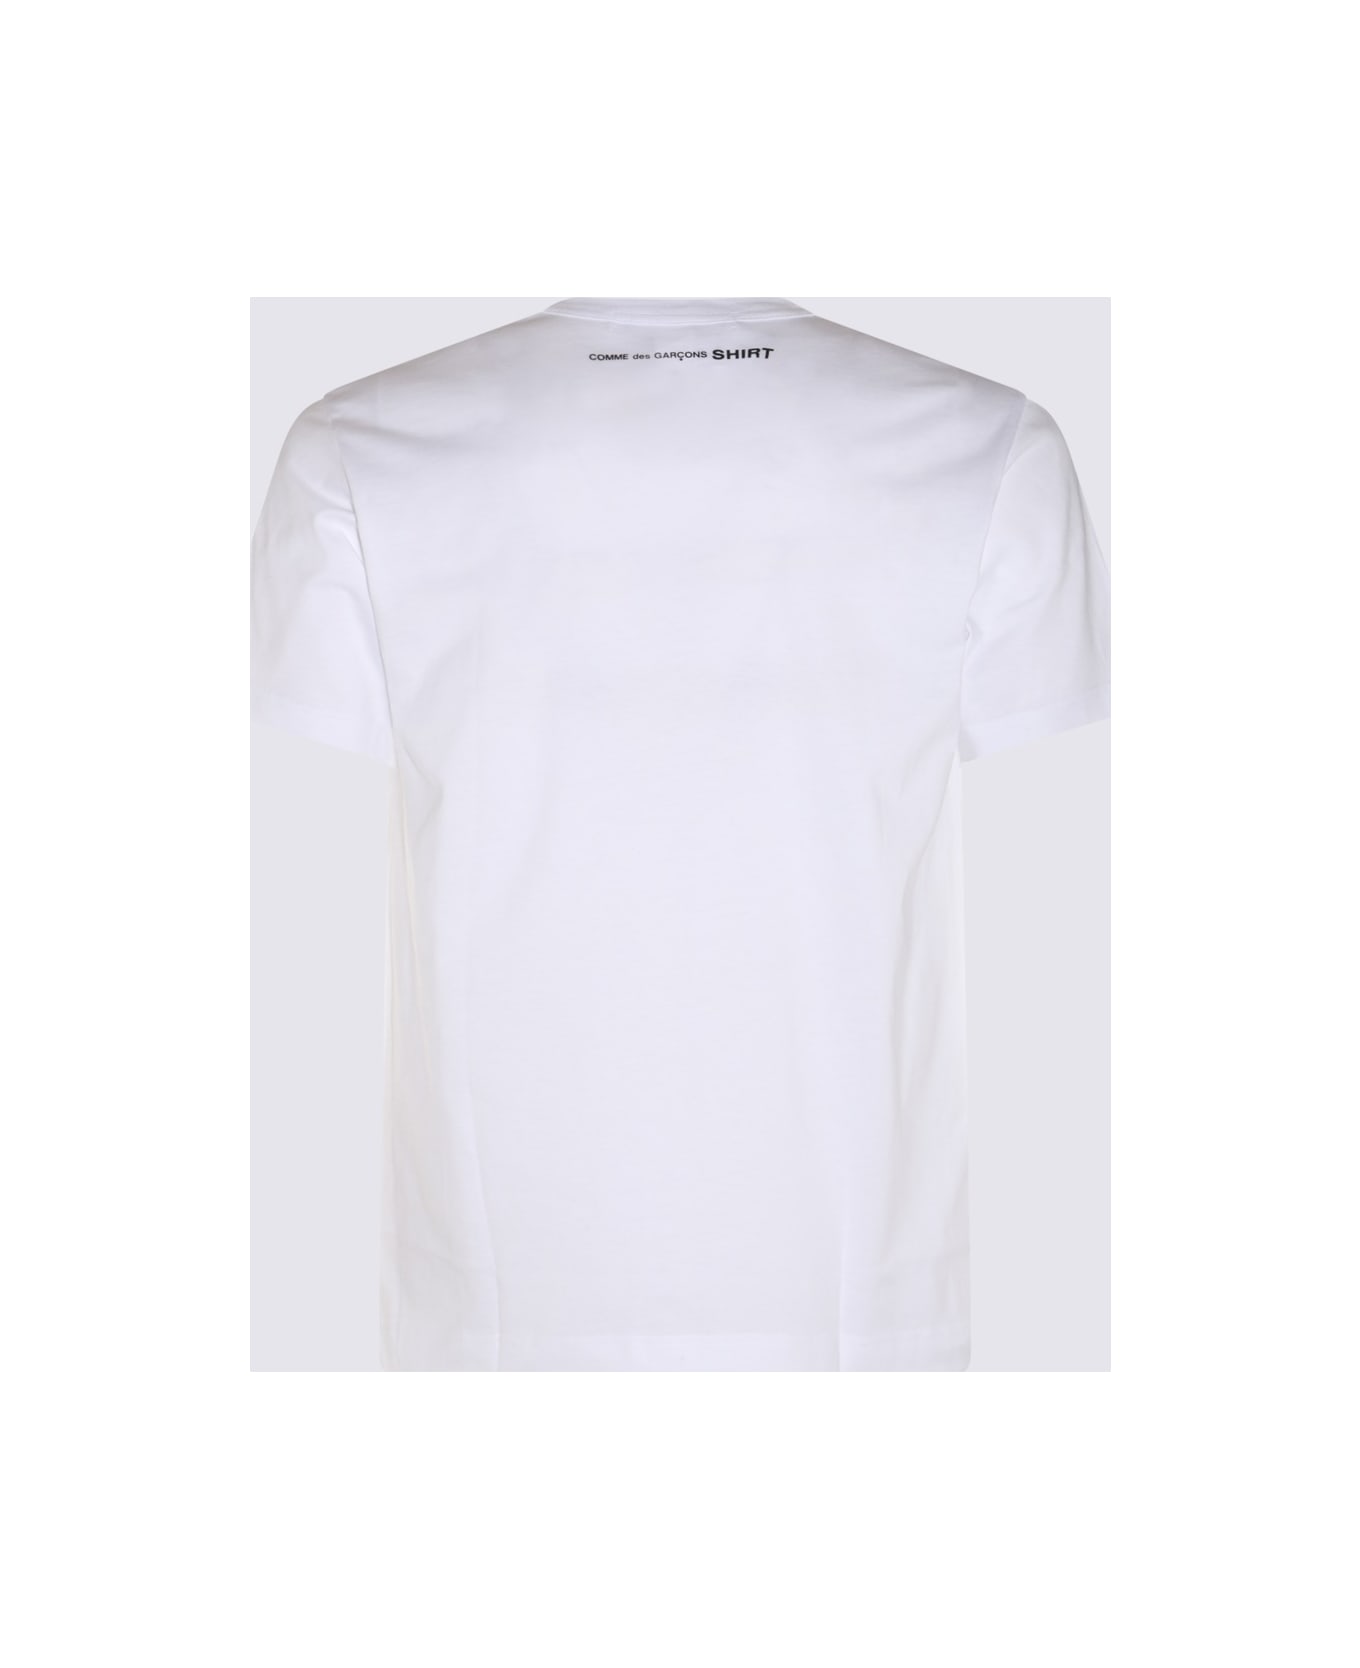 Comme des Garçons White Cotton T-shirt - TOP GREY